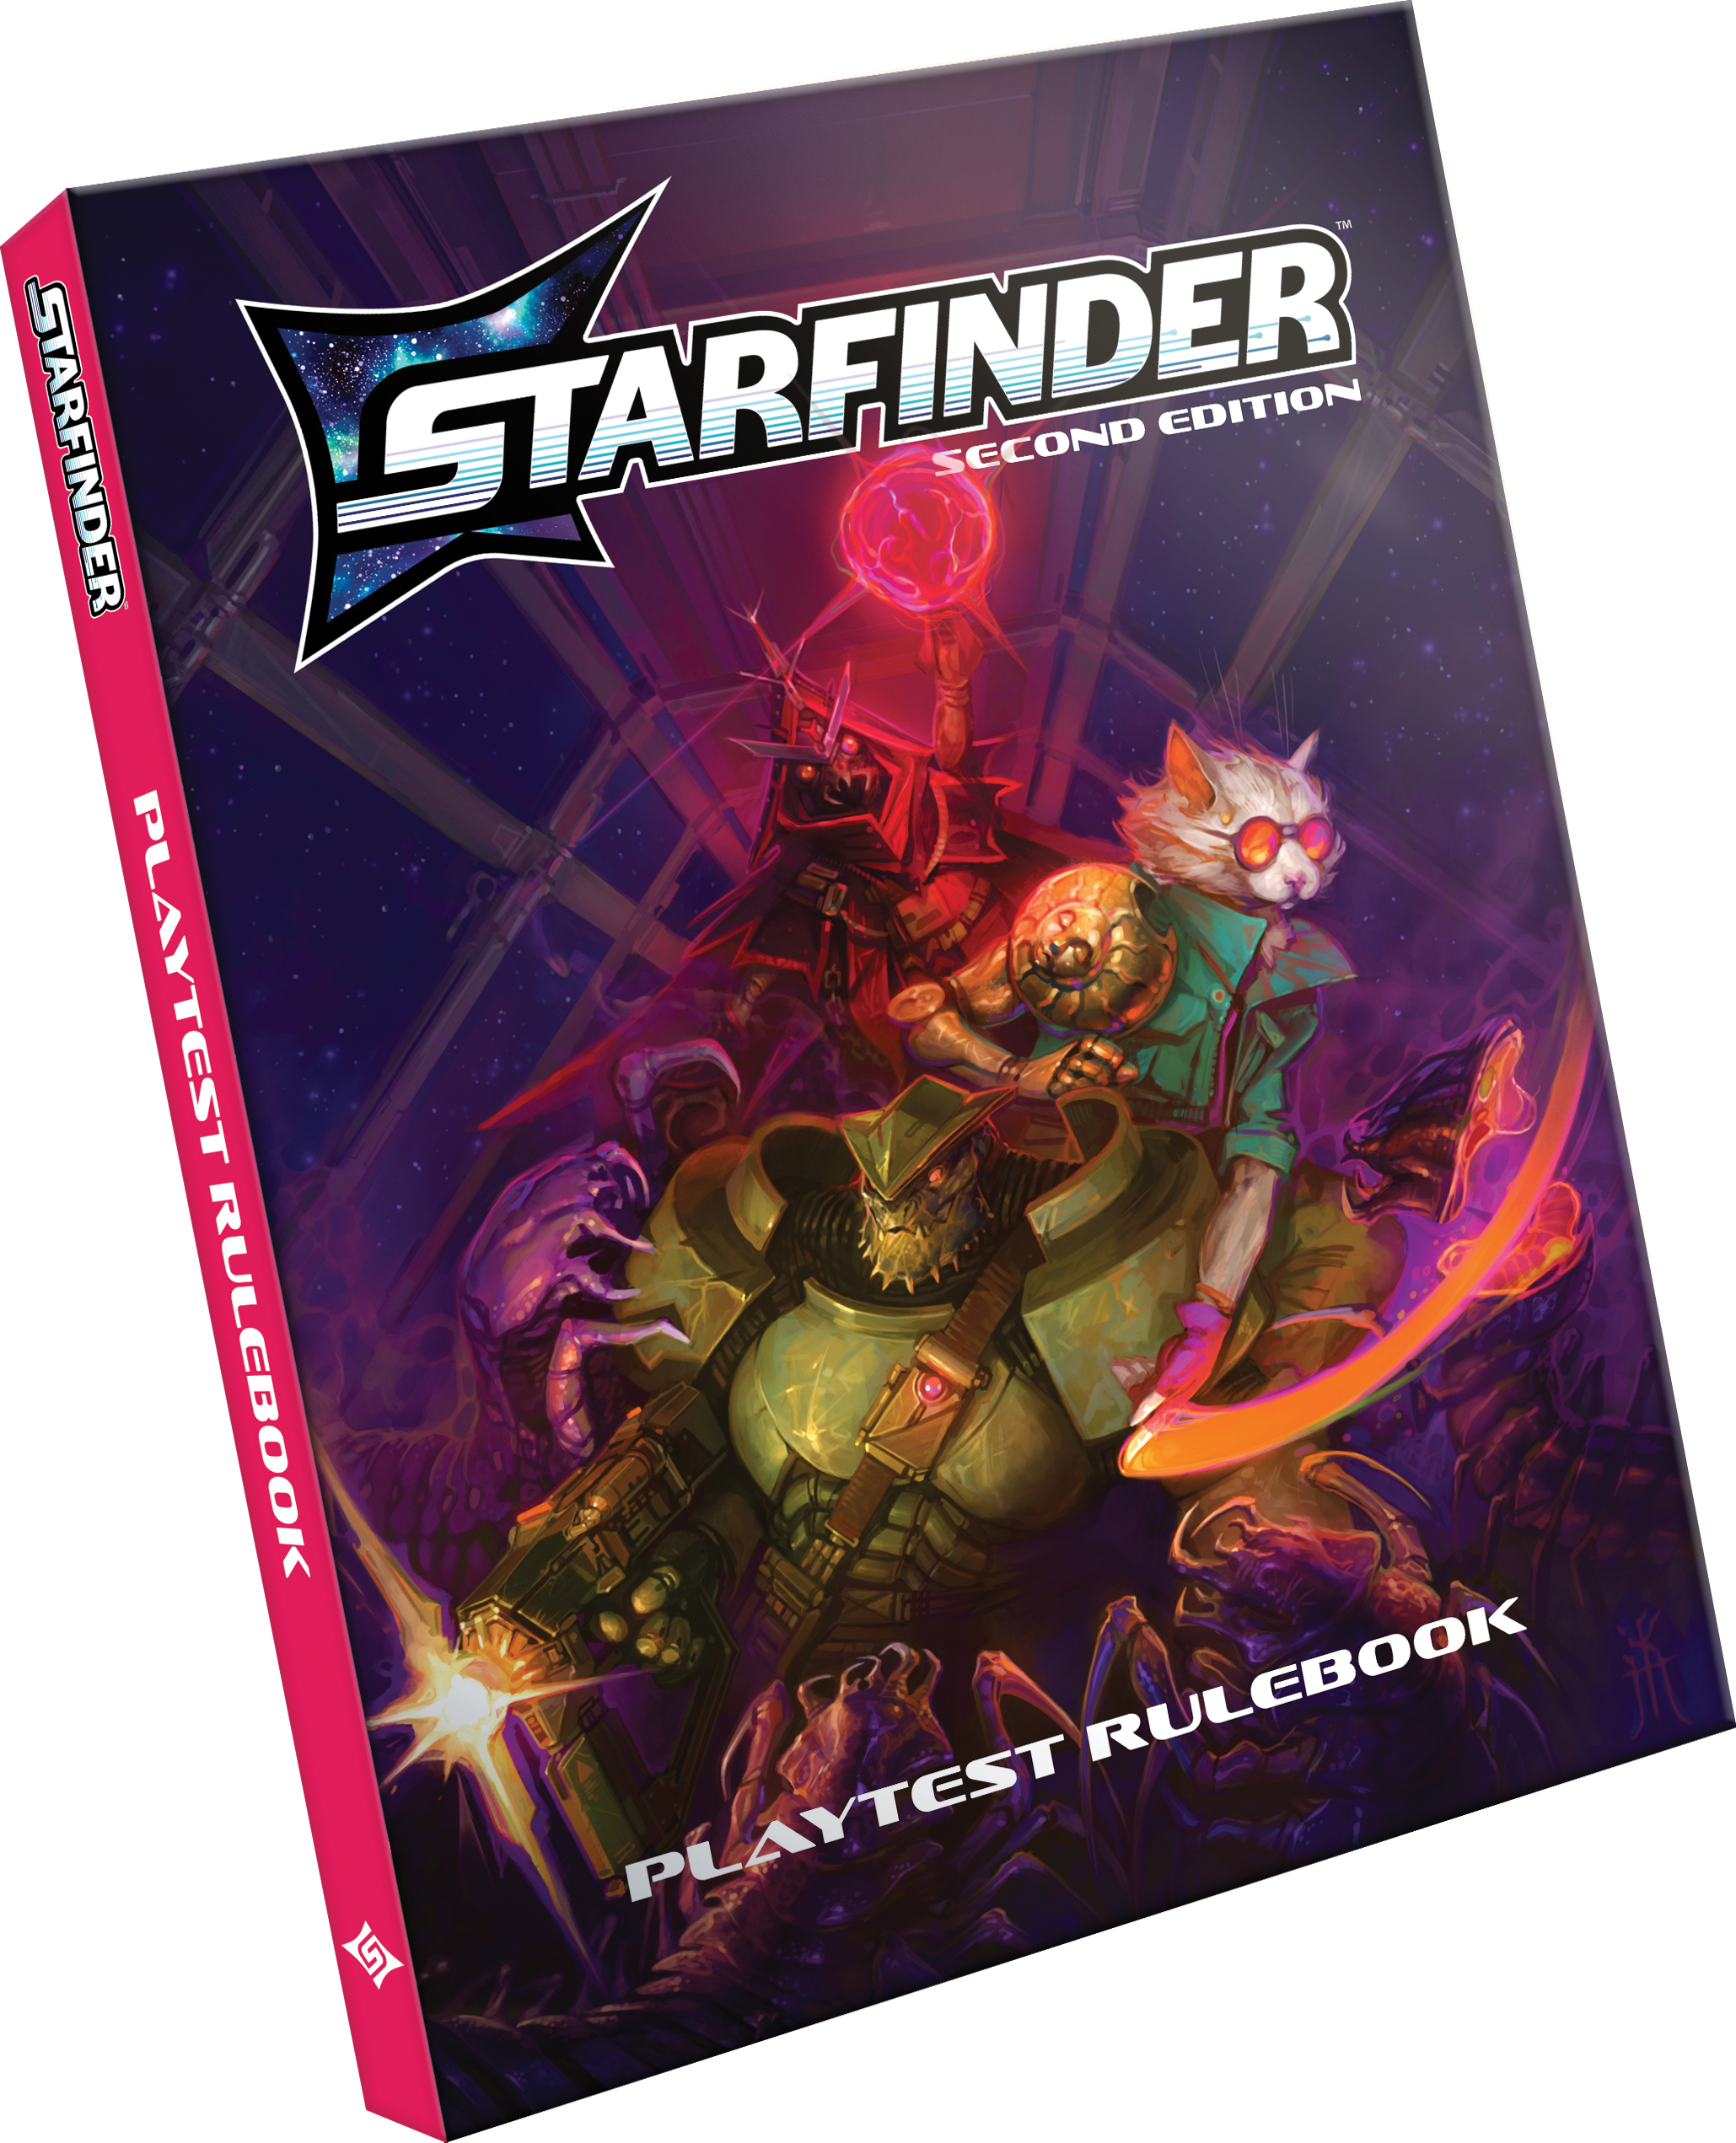 GTM #291 - Starfinder Second Edition Playtest